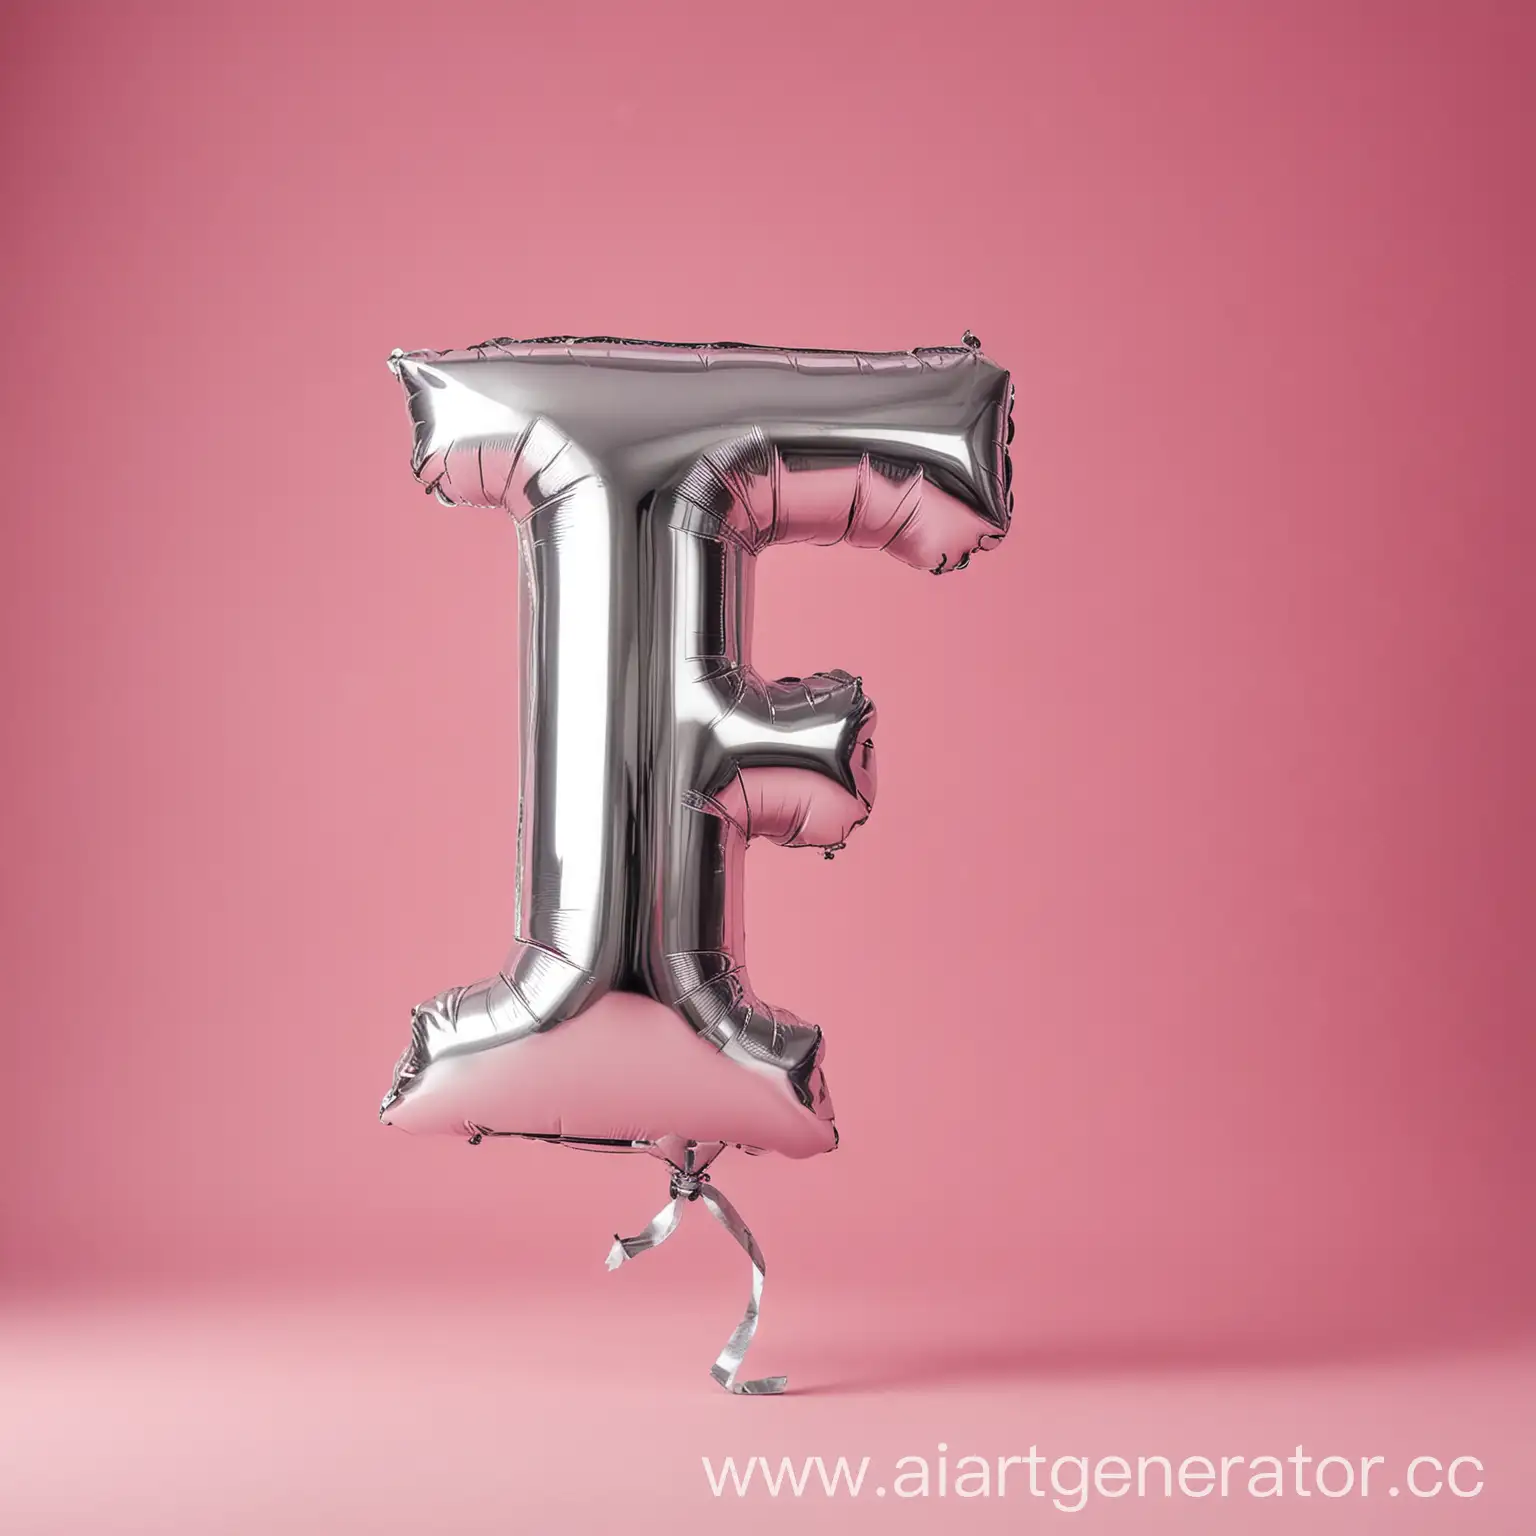 Заглавная буква "Ф" в виде серебренного воздушного шарика. НА ФОНЕ РОЗОВОГО ФОНА